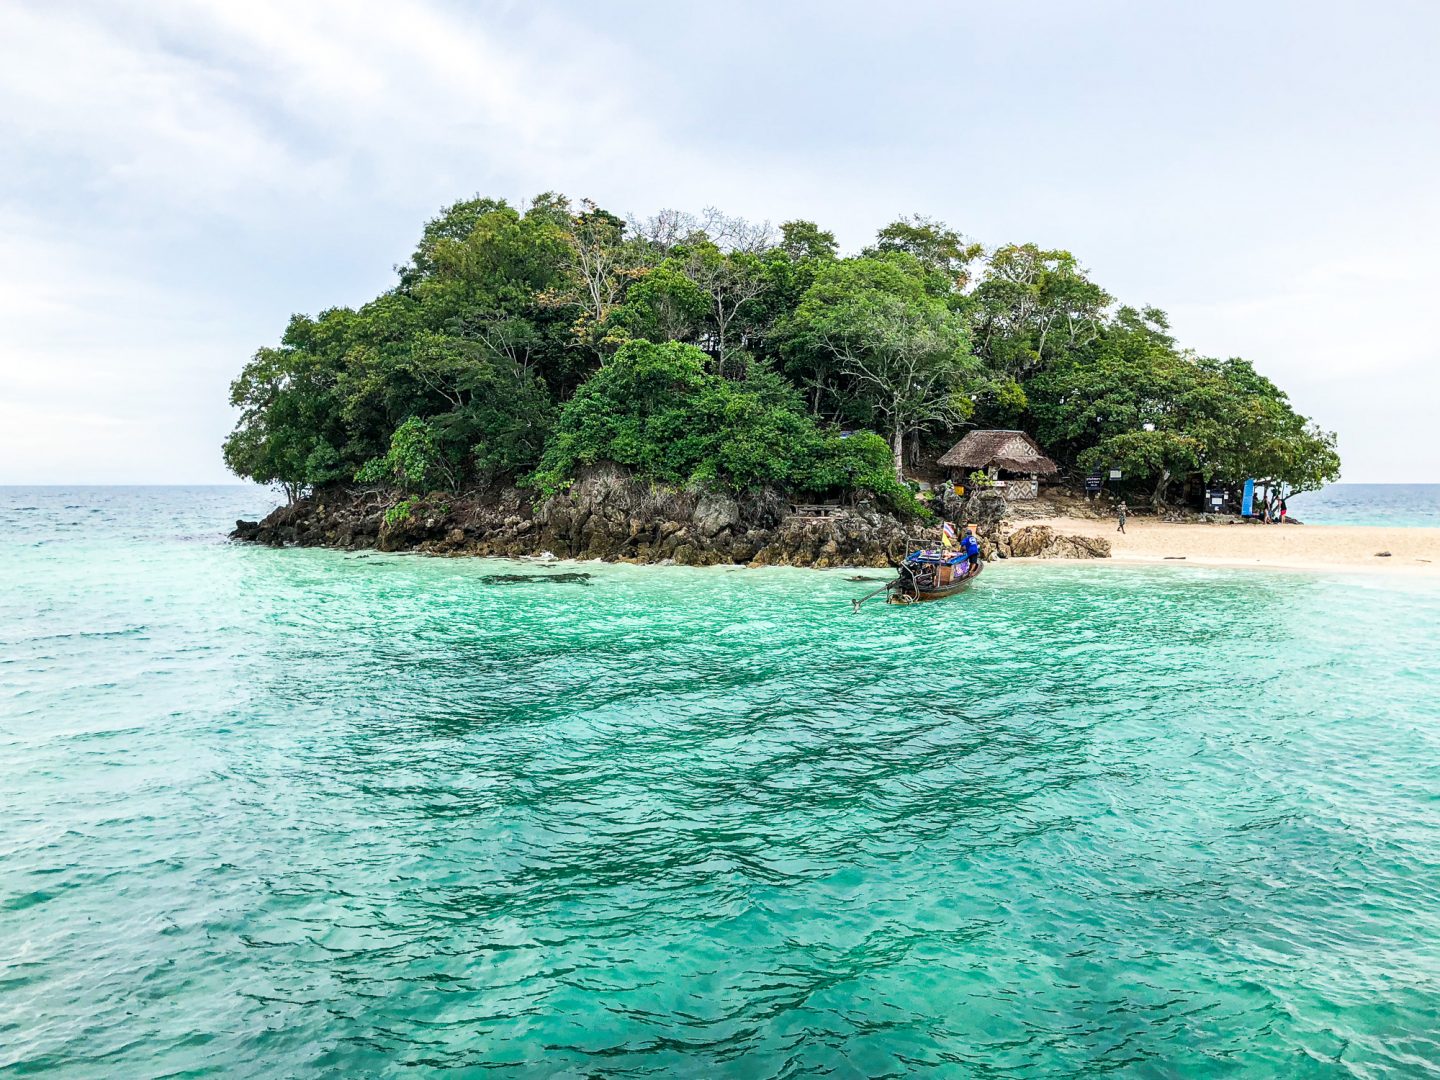 Tajlandia – Co zobaczyć w Krabi? Rajskie wyspy i plaże, które trzeba odwiedzić